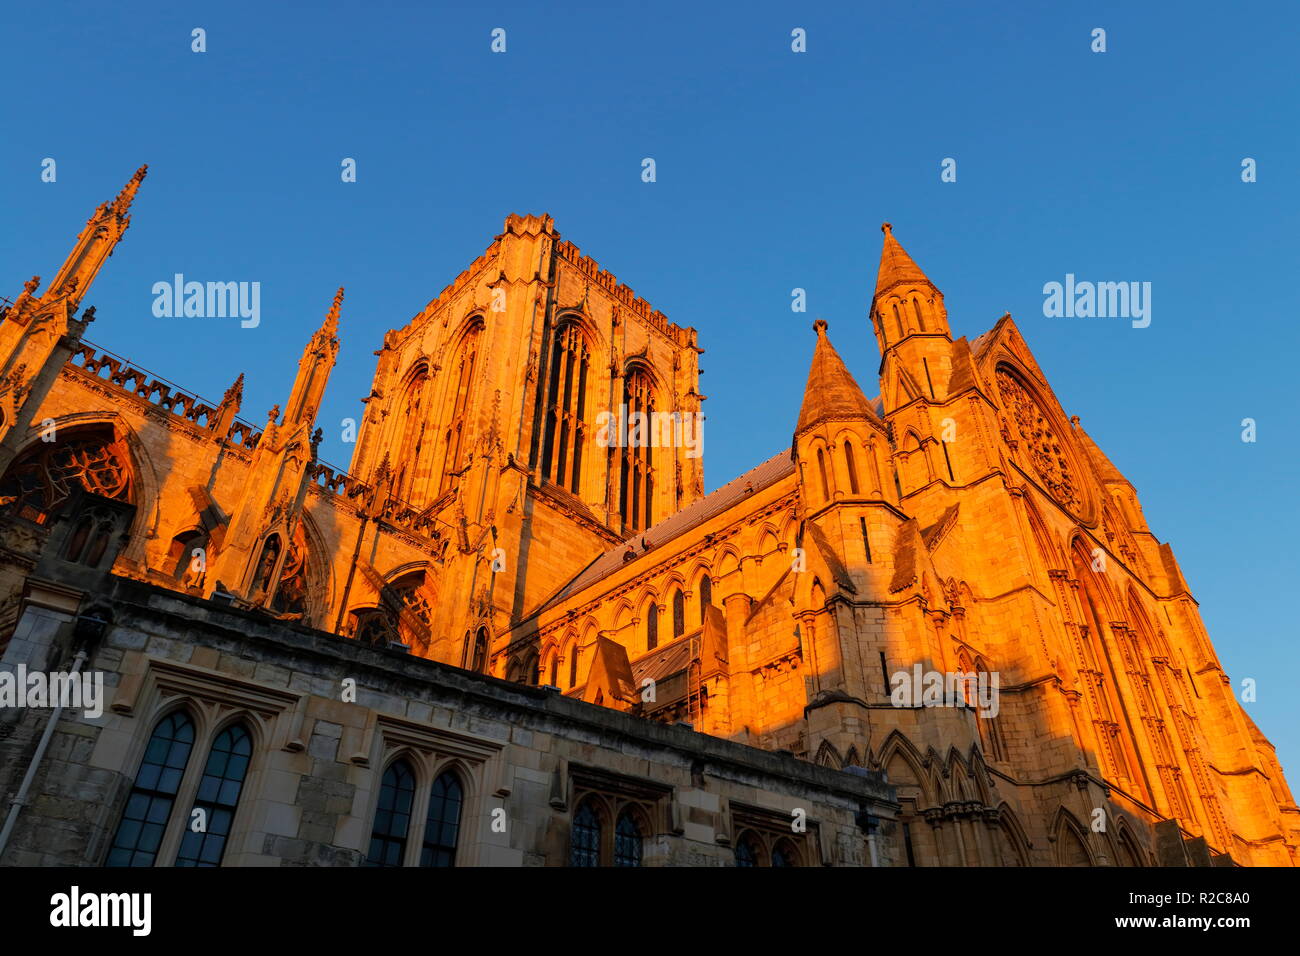 Il tetto della cattedrale di York Minster nel North Yorkshire emette un bagliore dorato durante il tramonto. Foto Stock